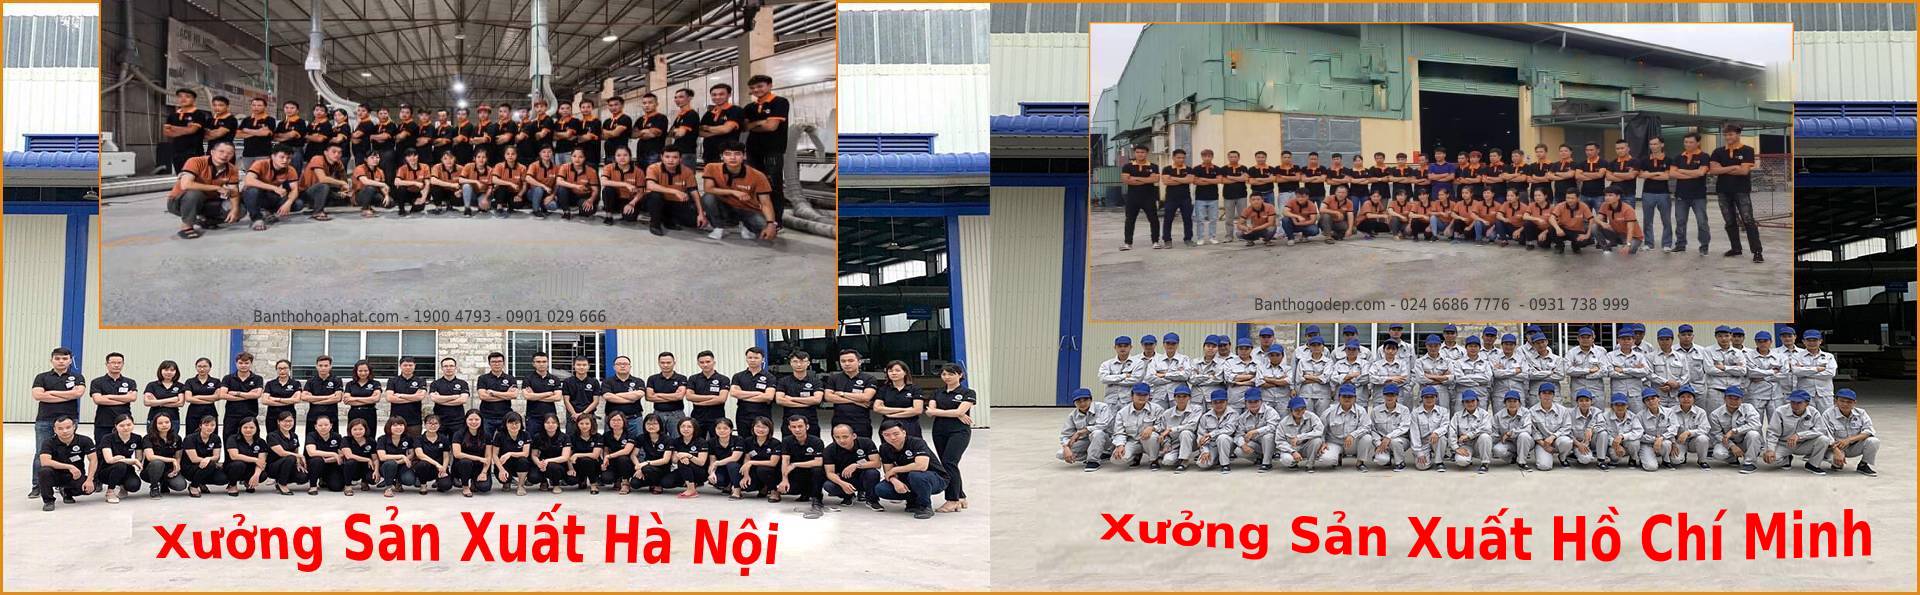 Xưởng sản xuất gỗ cao cấp, chất lượng hàng đầu Việt Nam